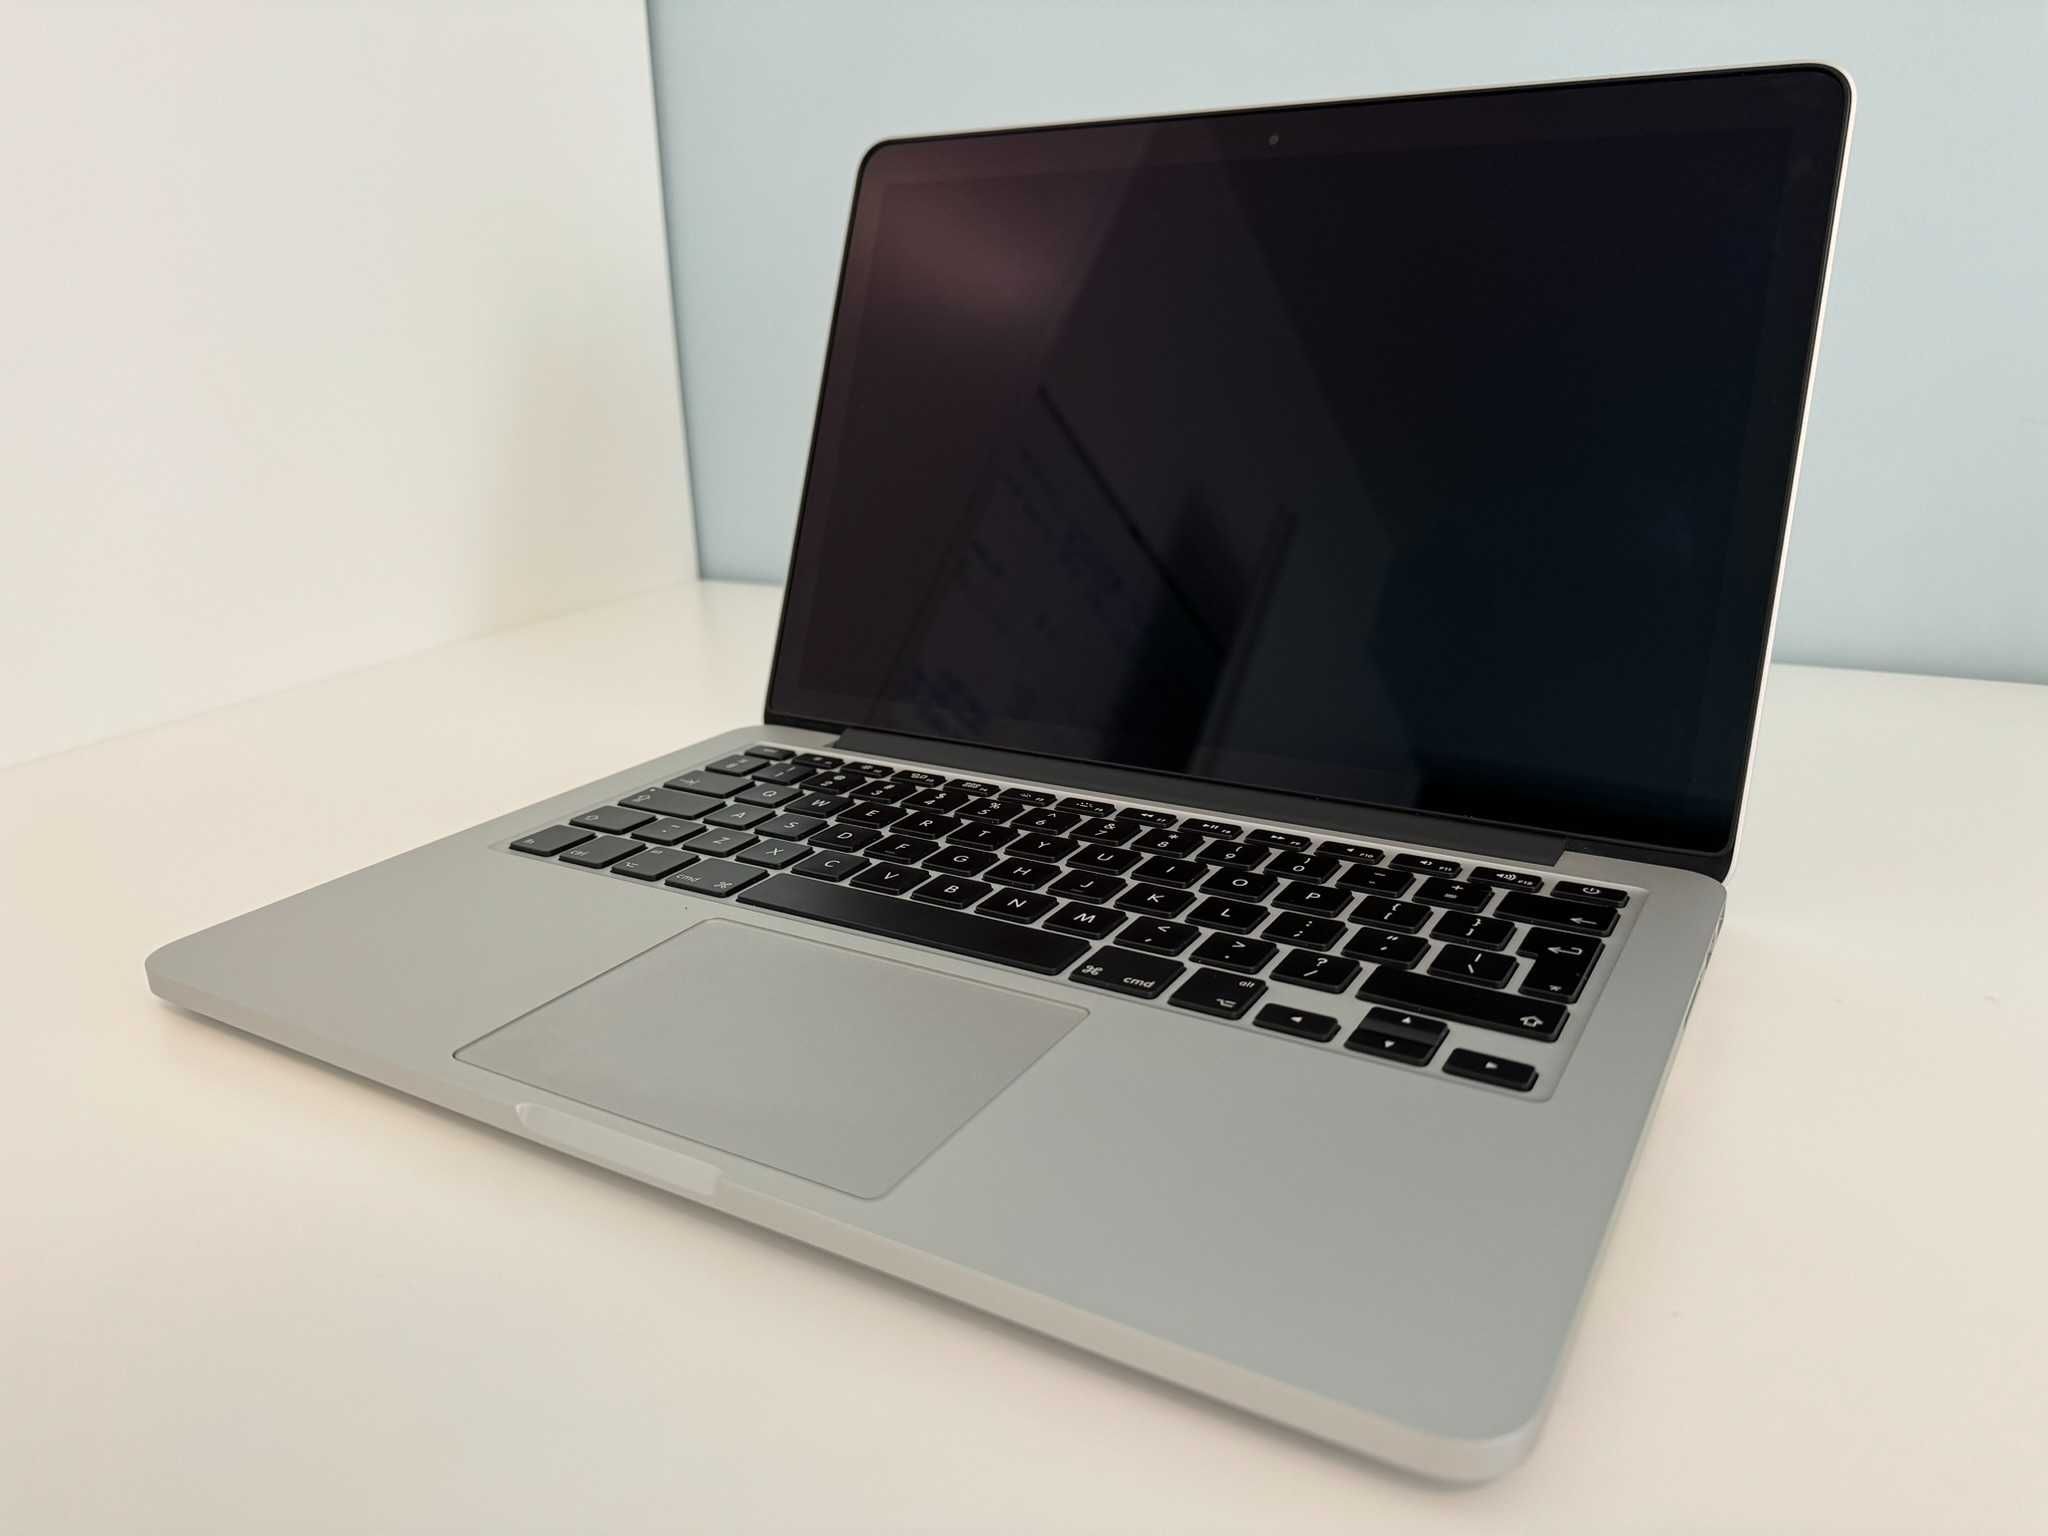 Vand Macbook Pro Retina 13" Mid 2015 - 2.7GHz dual-core Intel Core i5